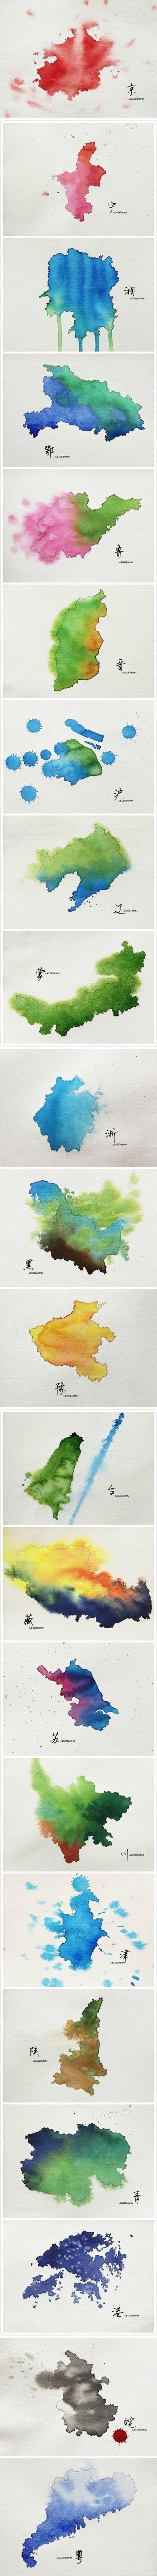 将中国各省的轮廓以特殊色彩构成水墨形式展...